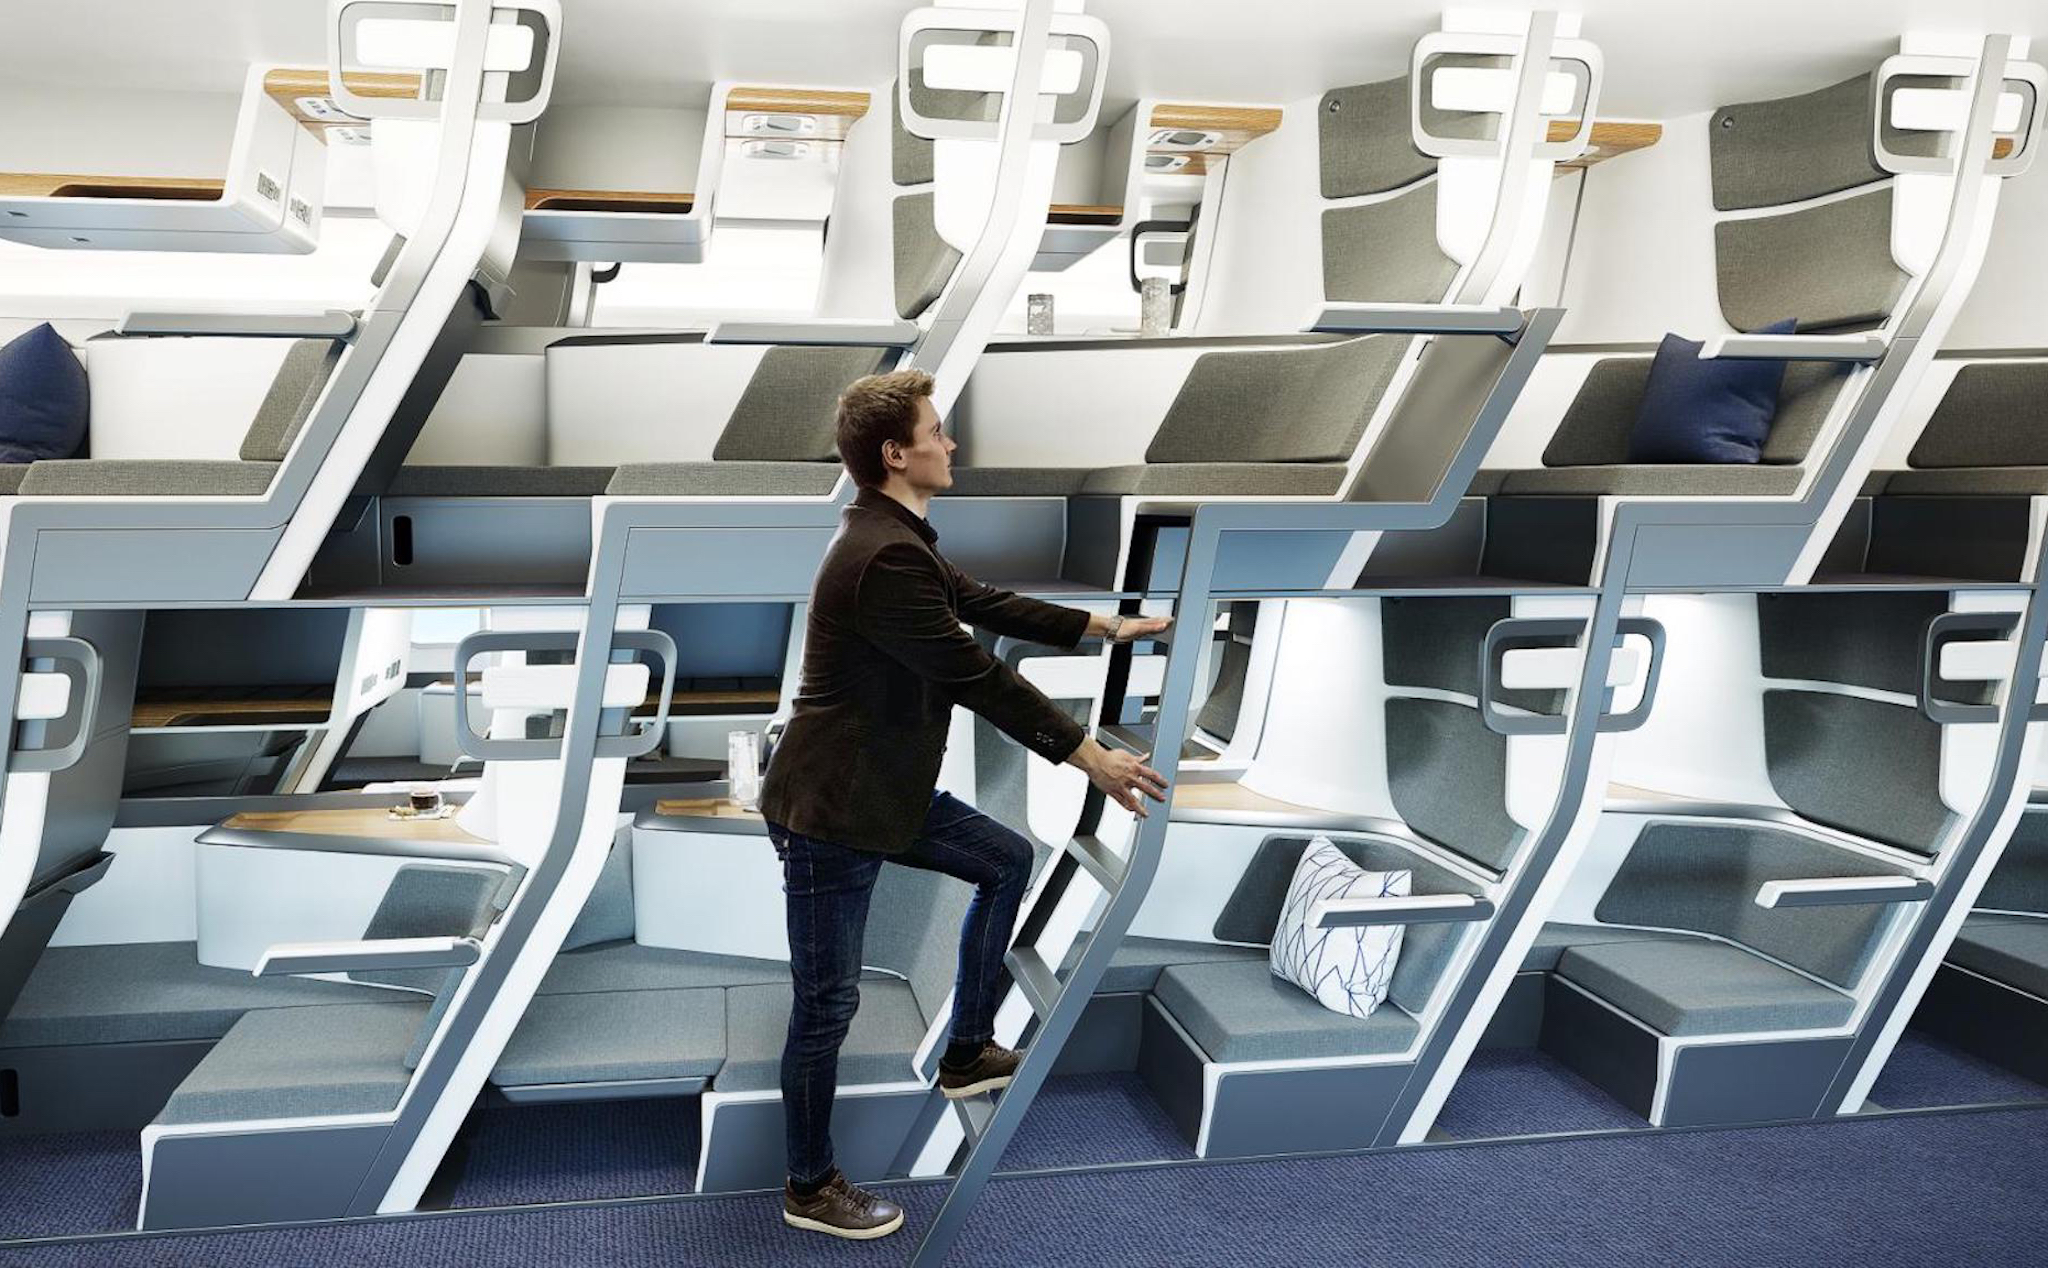 Ý tưởng ghế máy bay 2 tầng giúp hành khách thoải mái hơn mà vẫn đạt chuẩn giãn cách xã hội